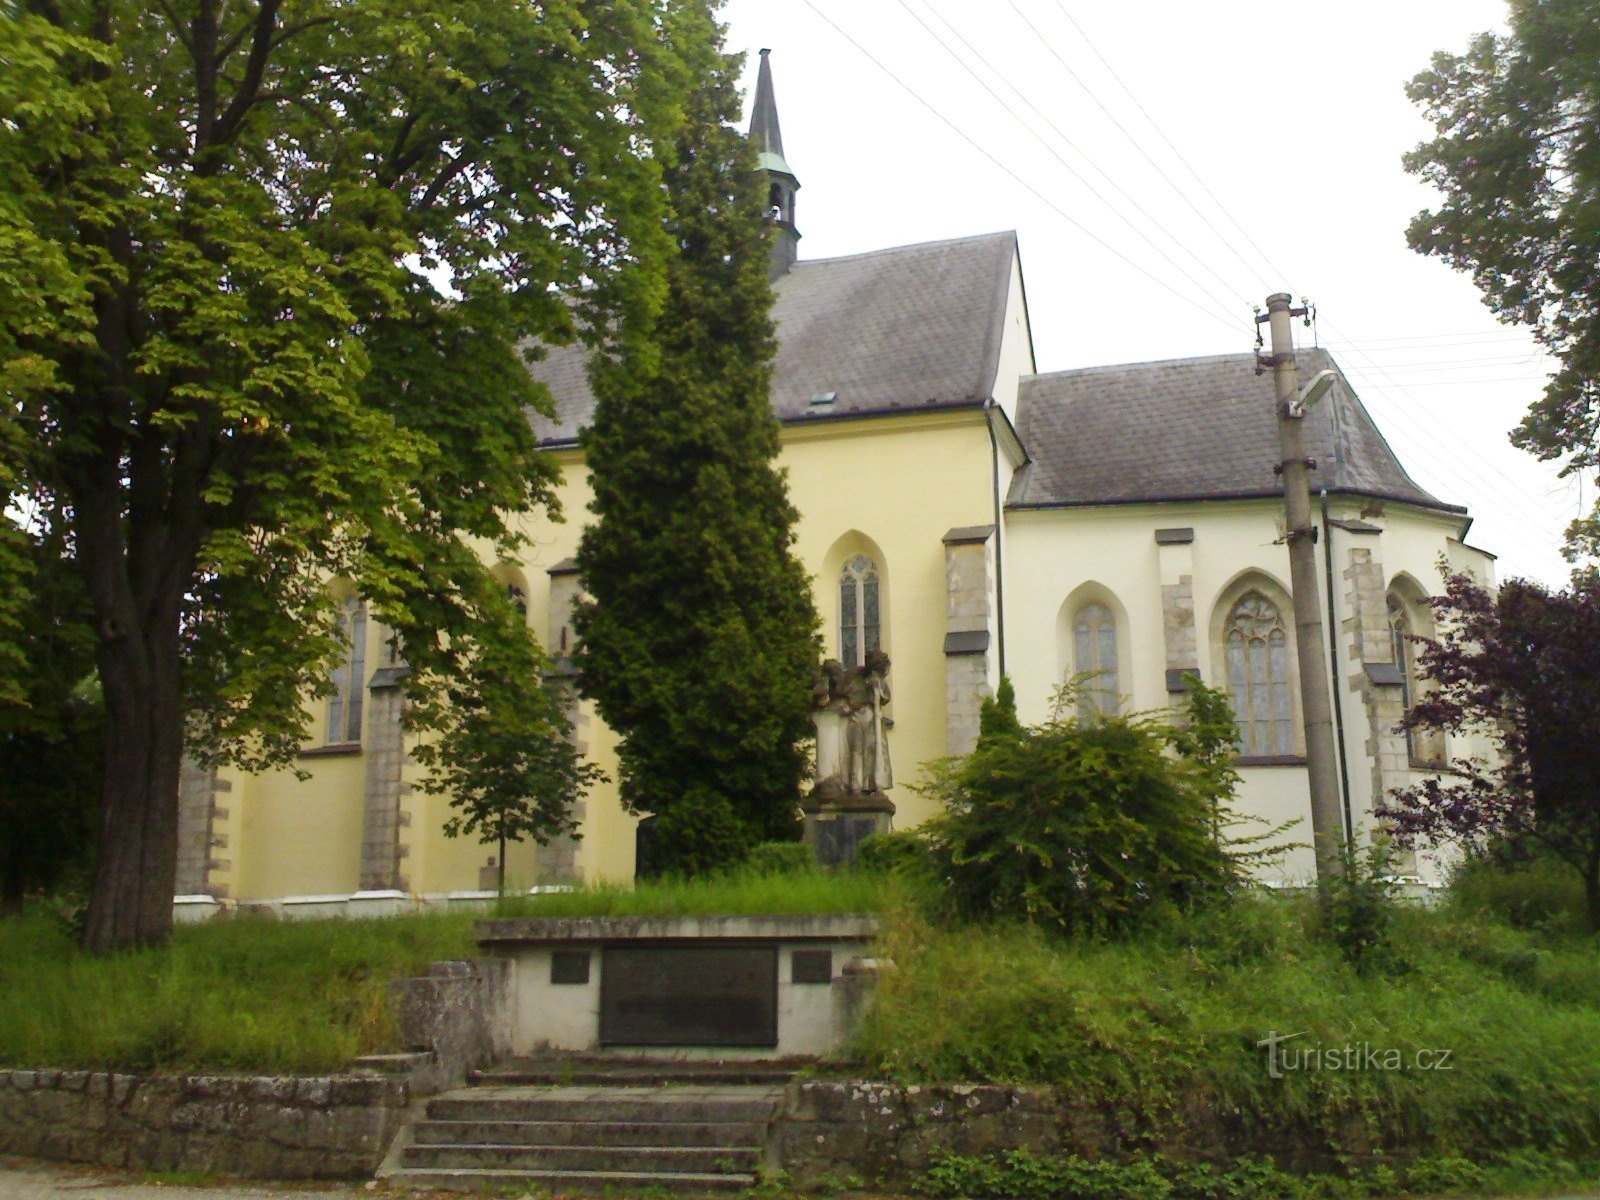 Rovensko pod Troskami - kościół św. Wacława